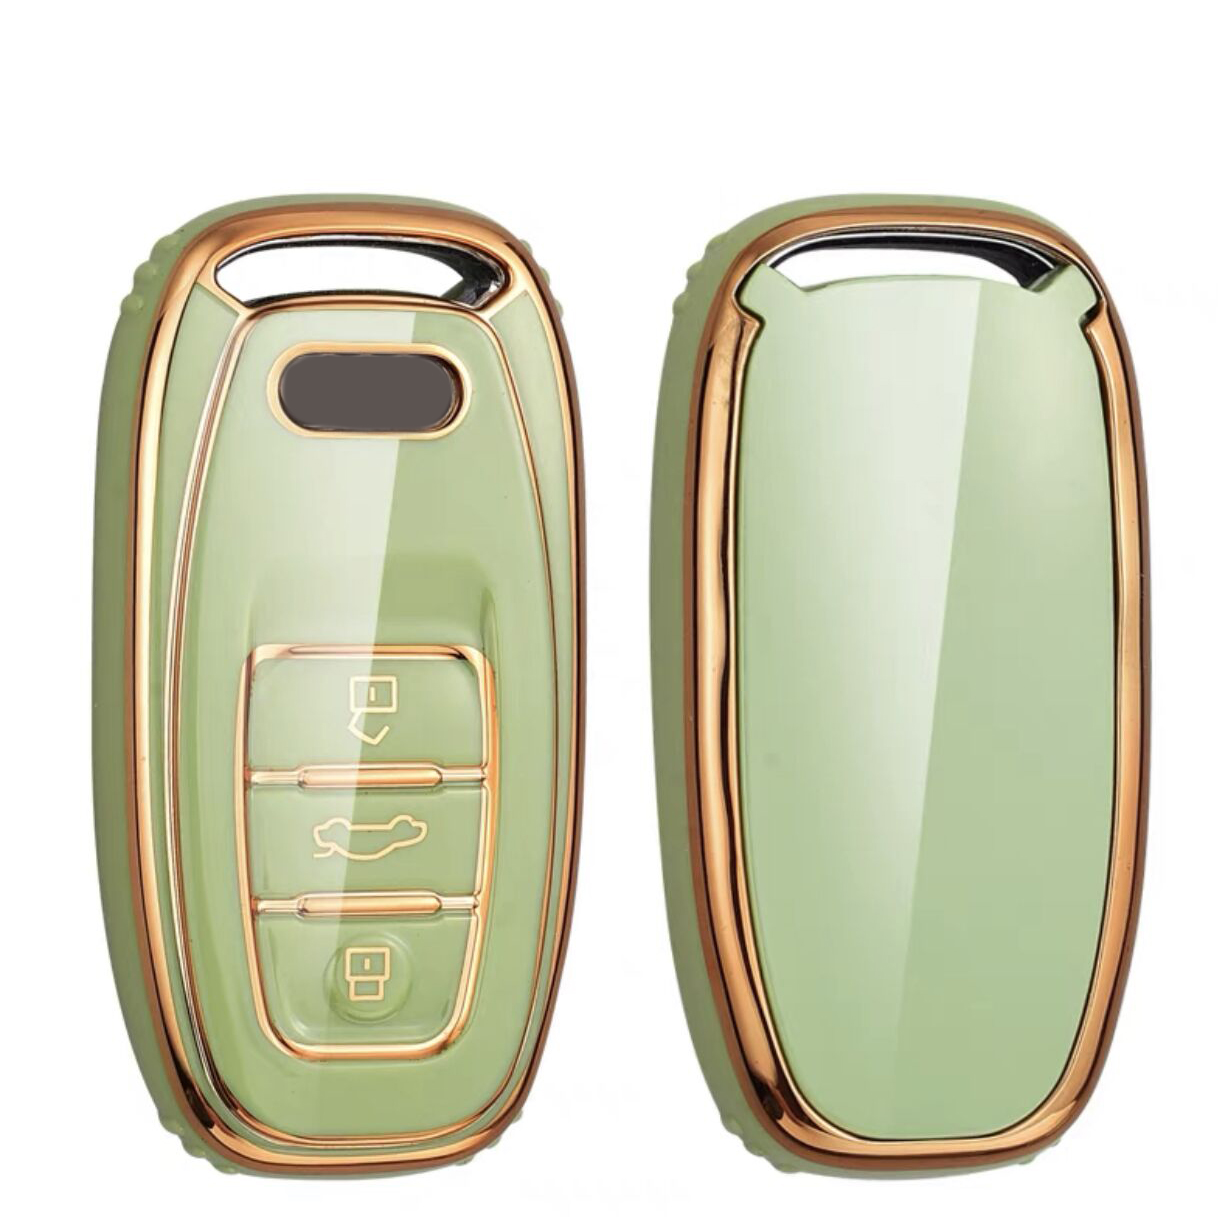 Suitable for Audi key cover A6L/ A7/Q5/S5 key protection case Green color - 5 pcs